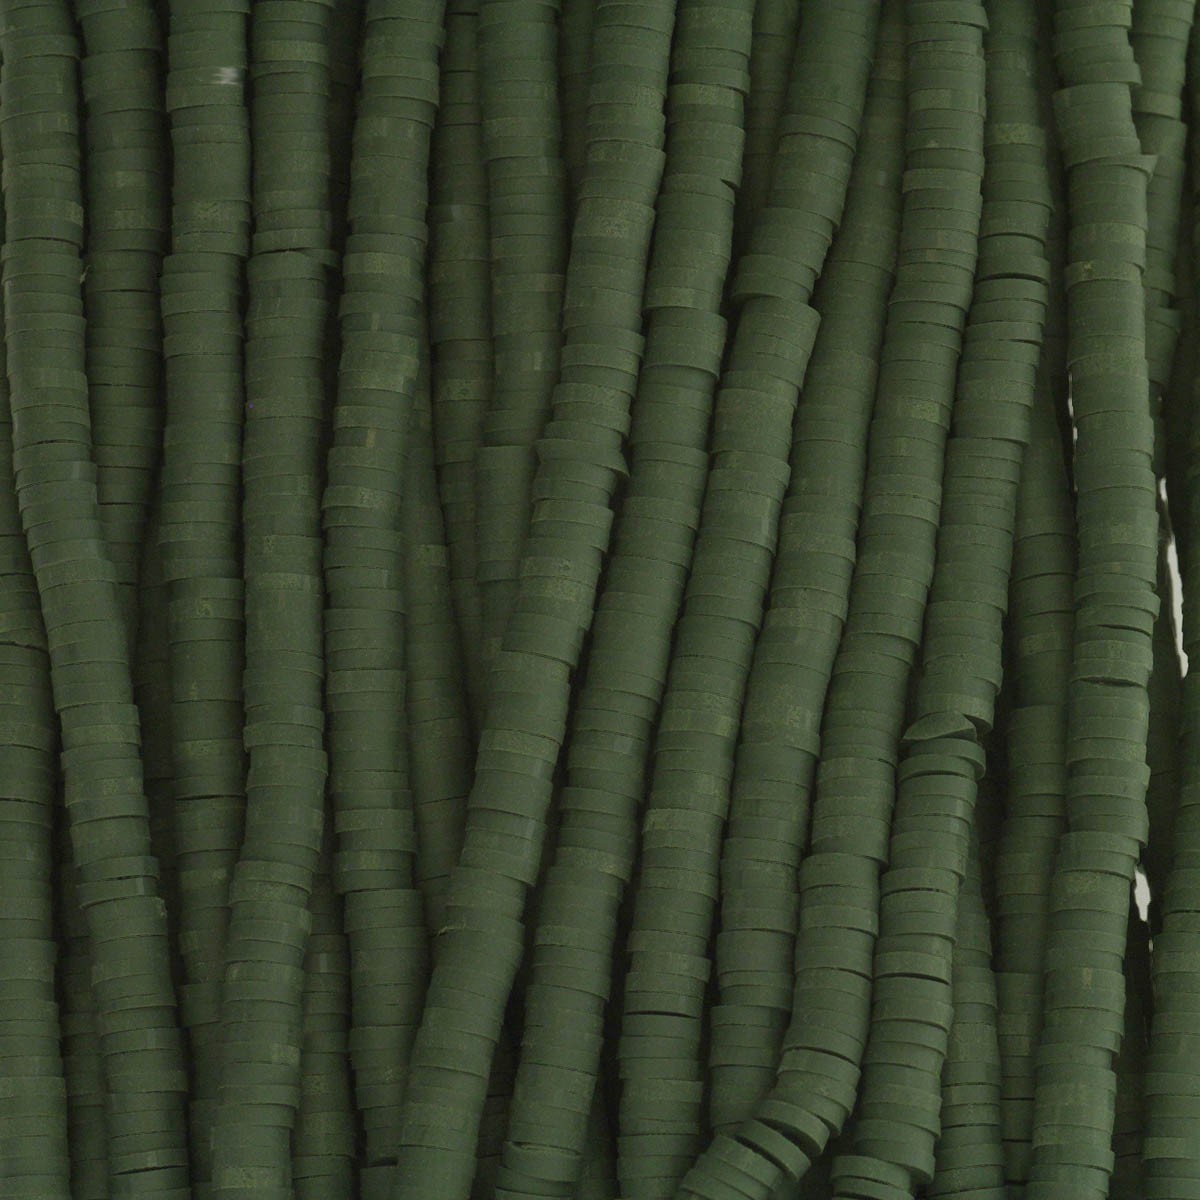 Katsuki beads / dark green / 4mm rings / 40cm rope / MOKA04079